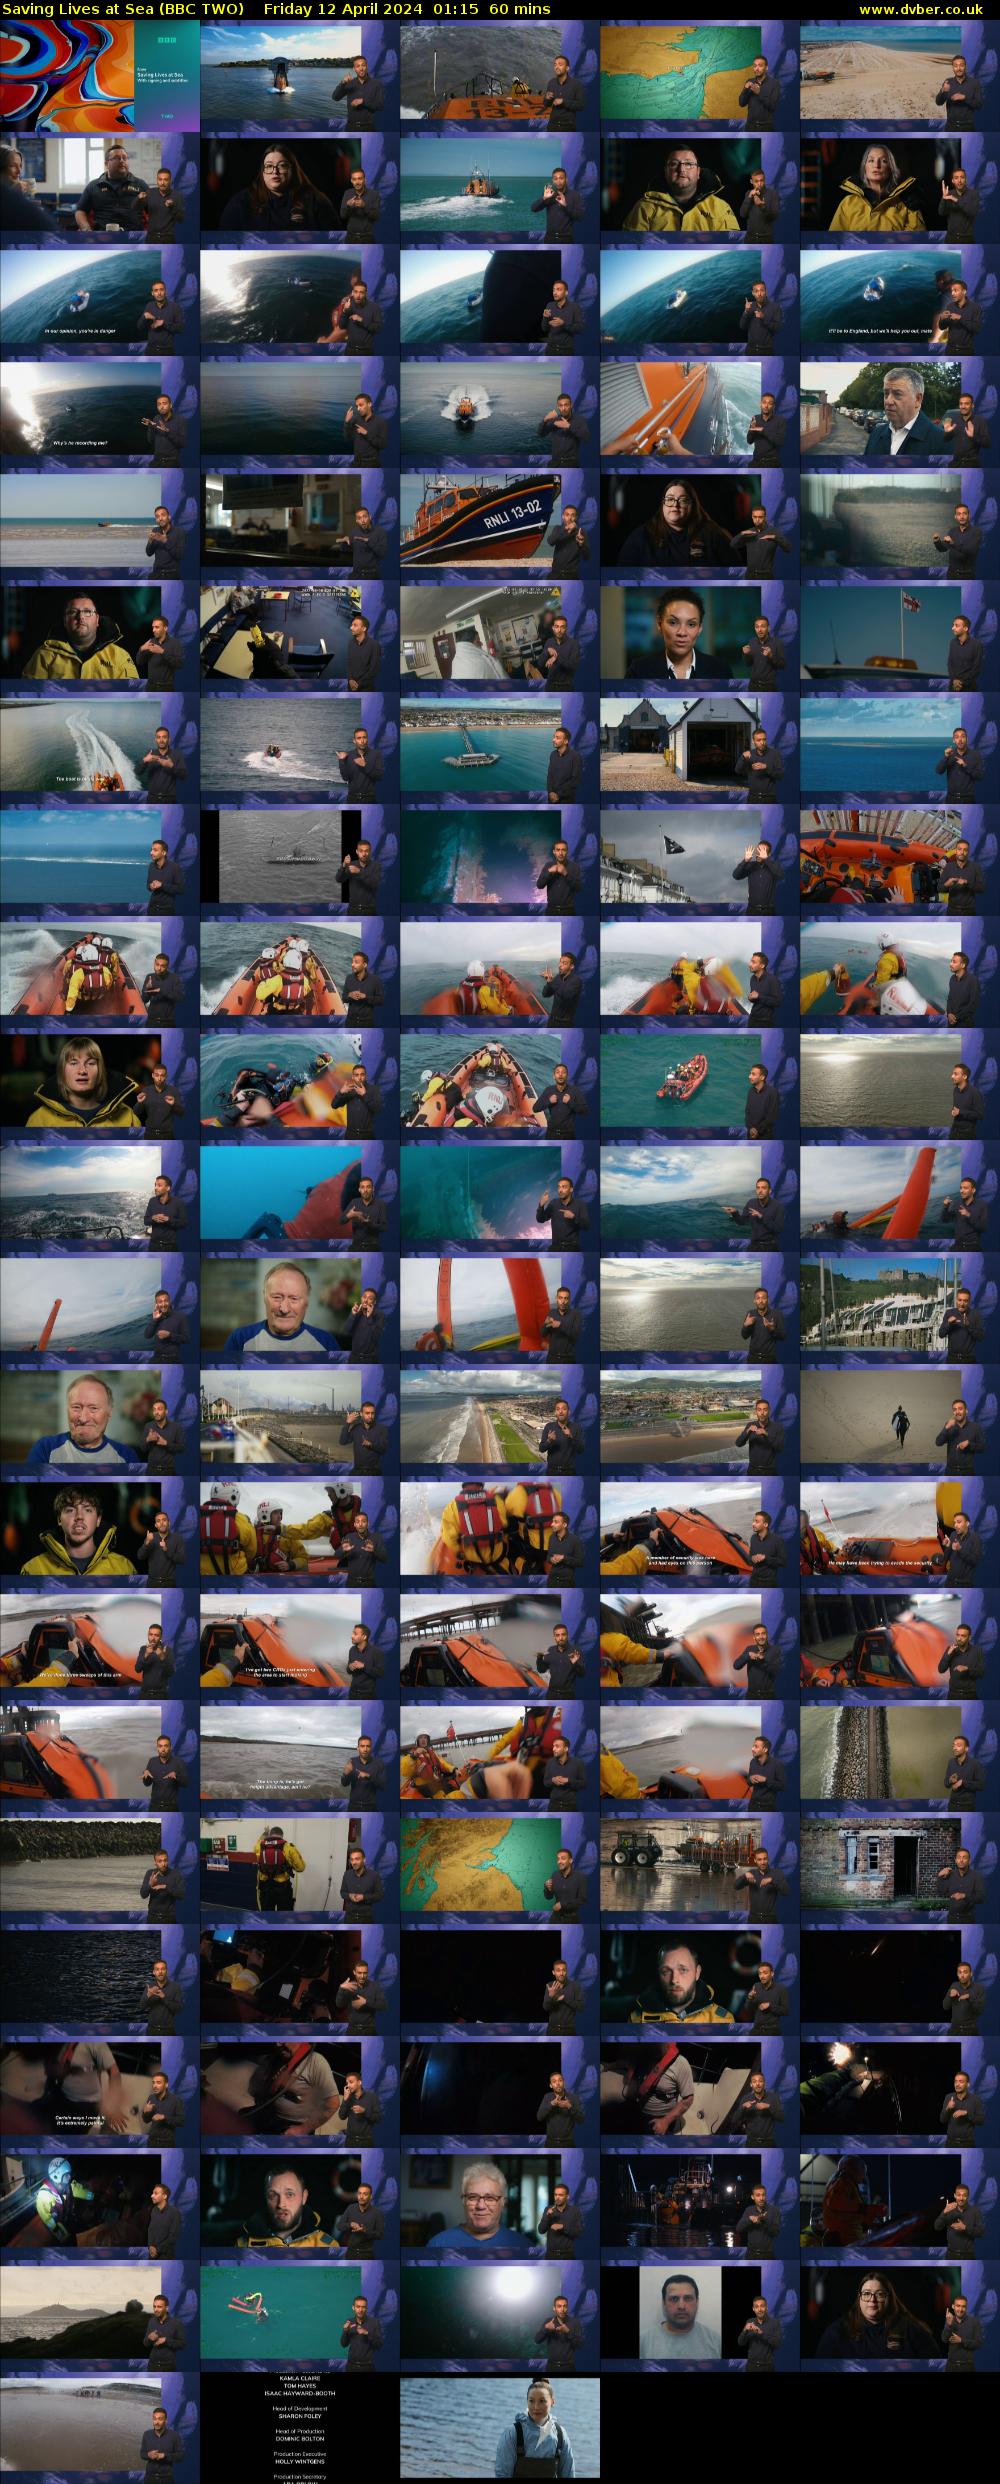 Saving Lives at Sea (BBC TWO) Friday 12 April 2024 01:15 - 02:15